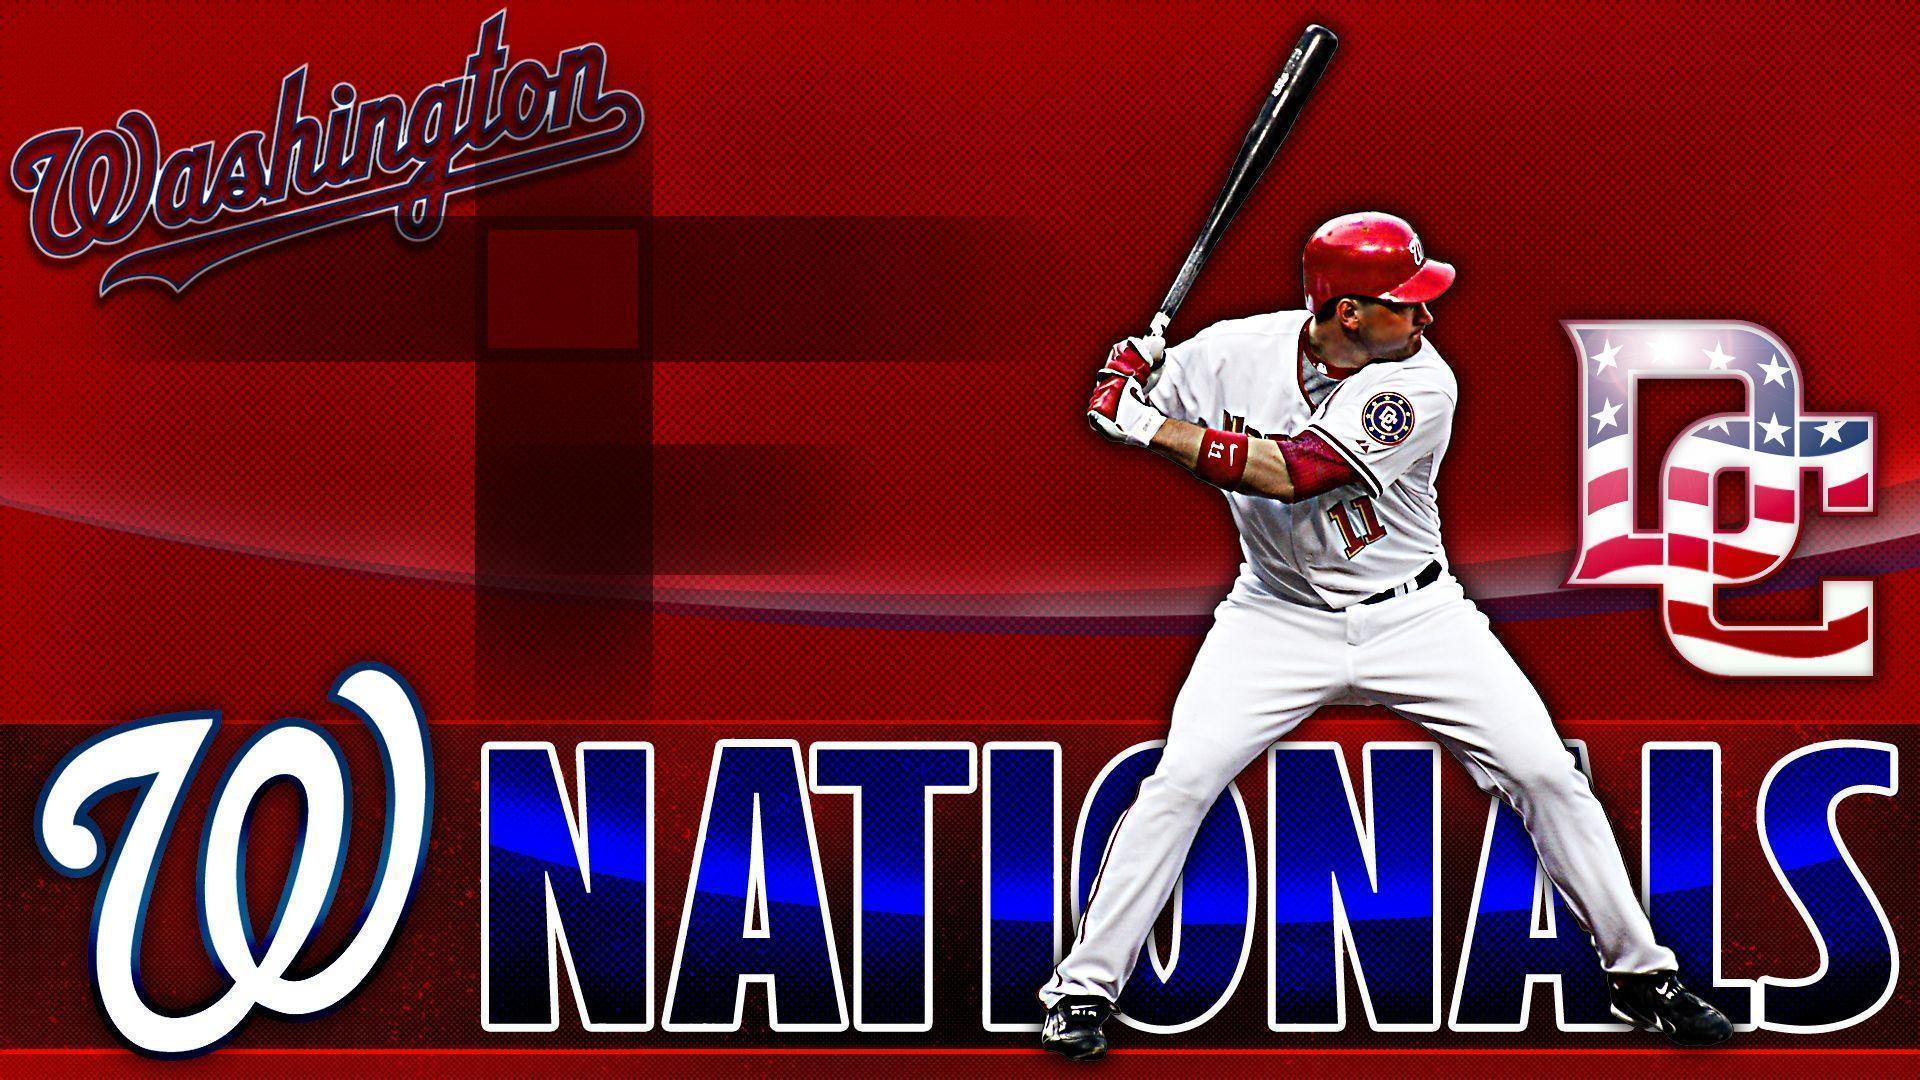 WASHINGTON NATIONALS mlb baseball (28) wallpaperx1080